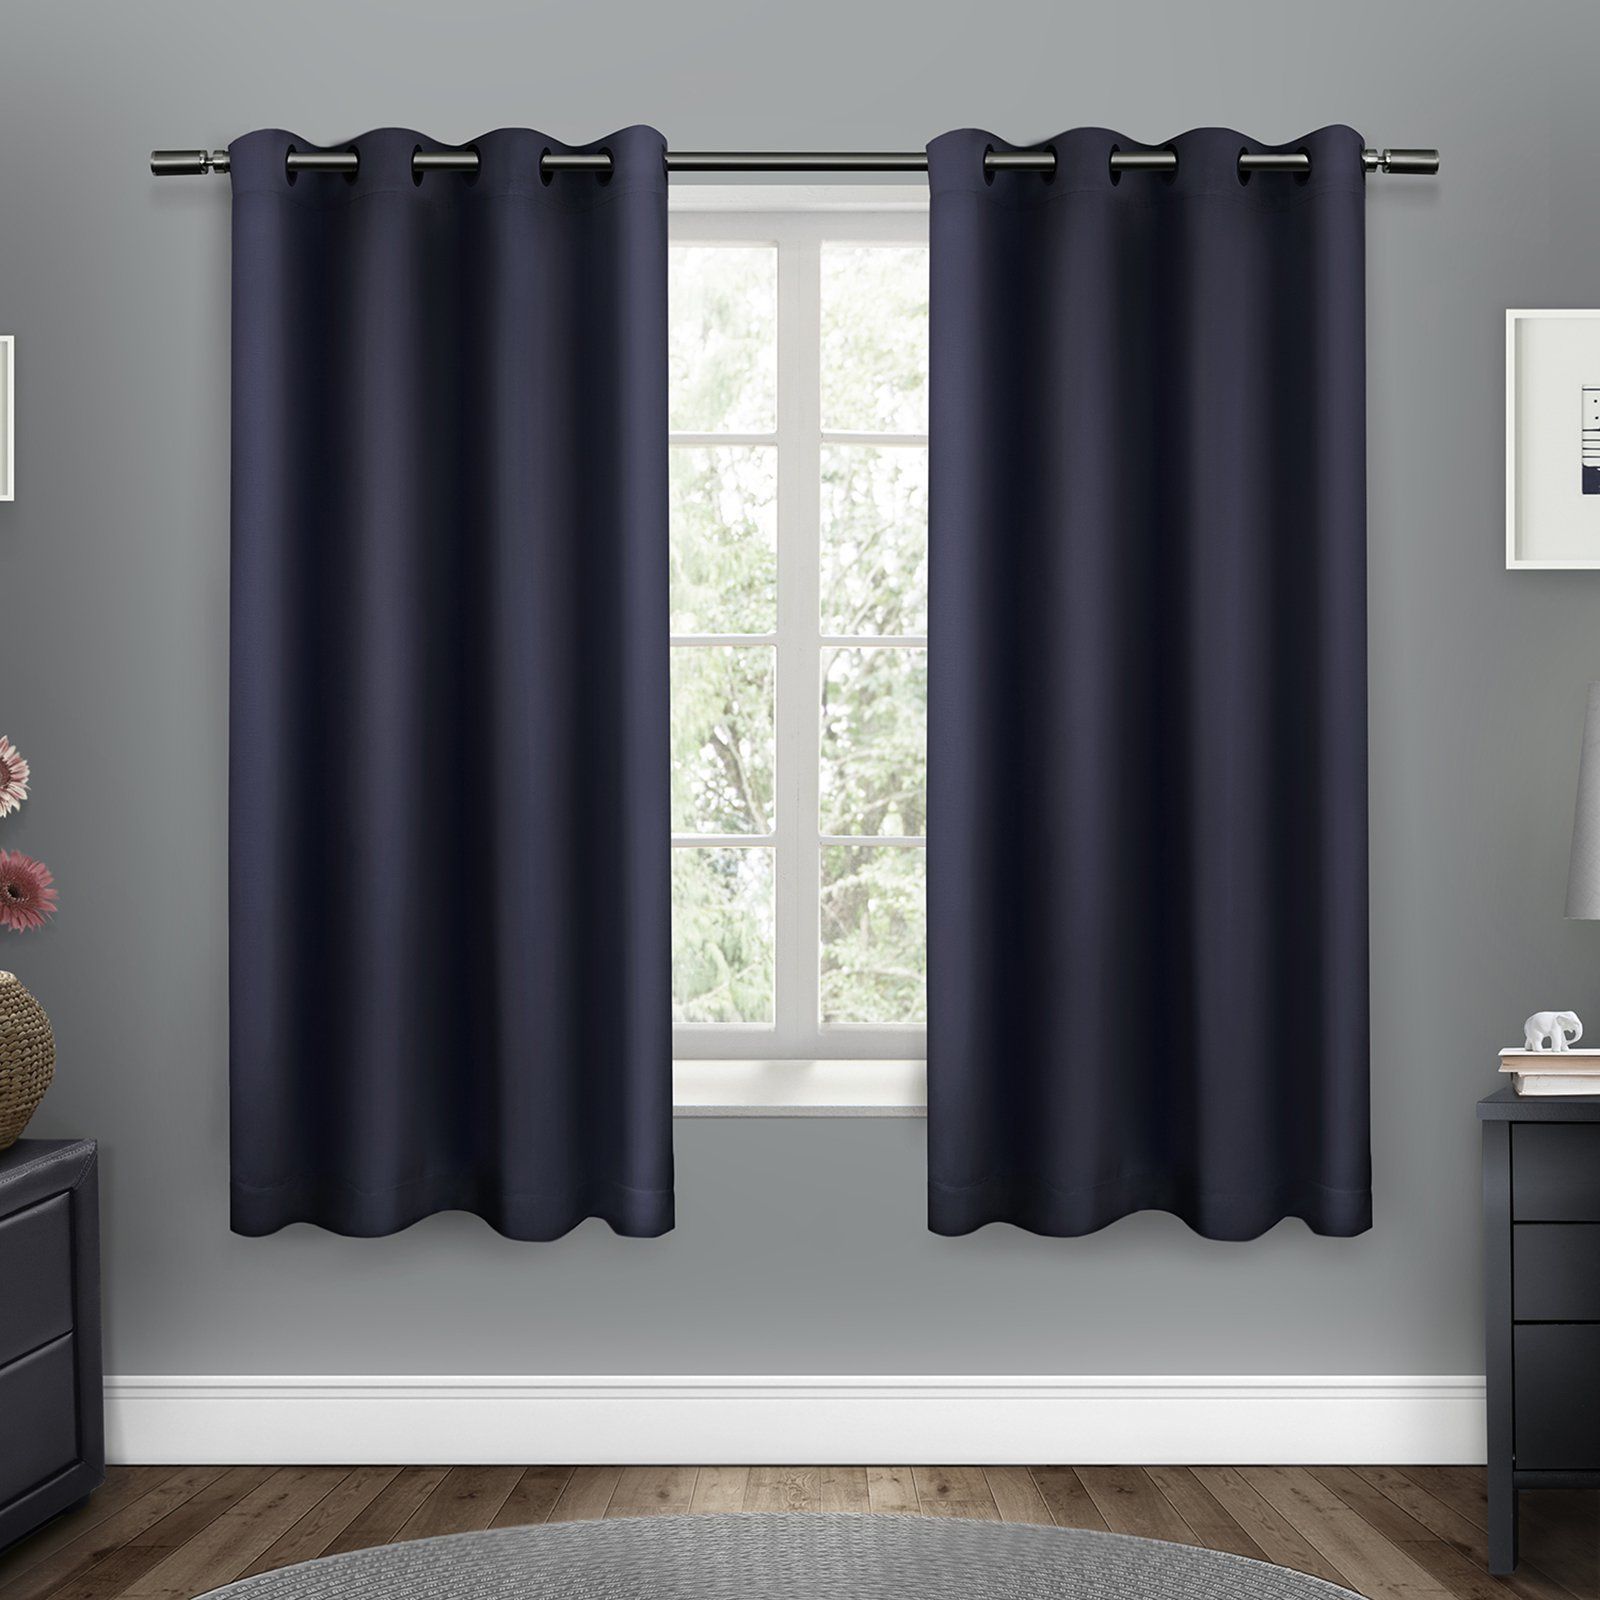 Sateen Woven Blackout Grommet Top Window Curtain Panel Pair For Woven Blackout Curtain Panel Pairs With Grommet Top (Photo 12 of 30)